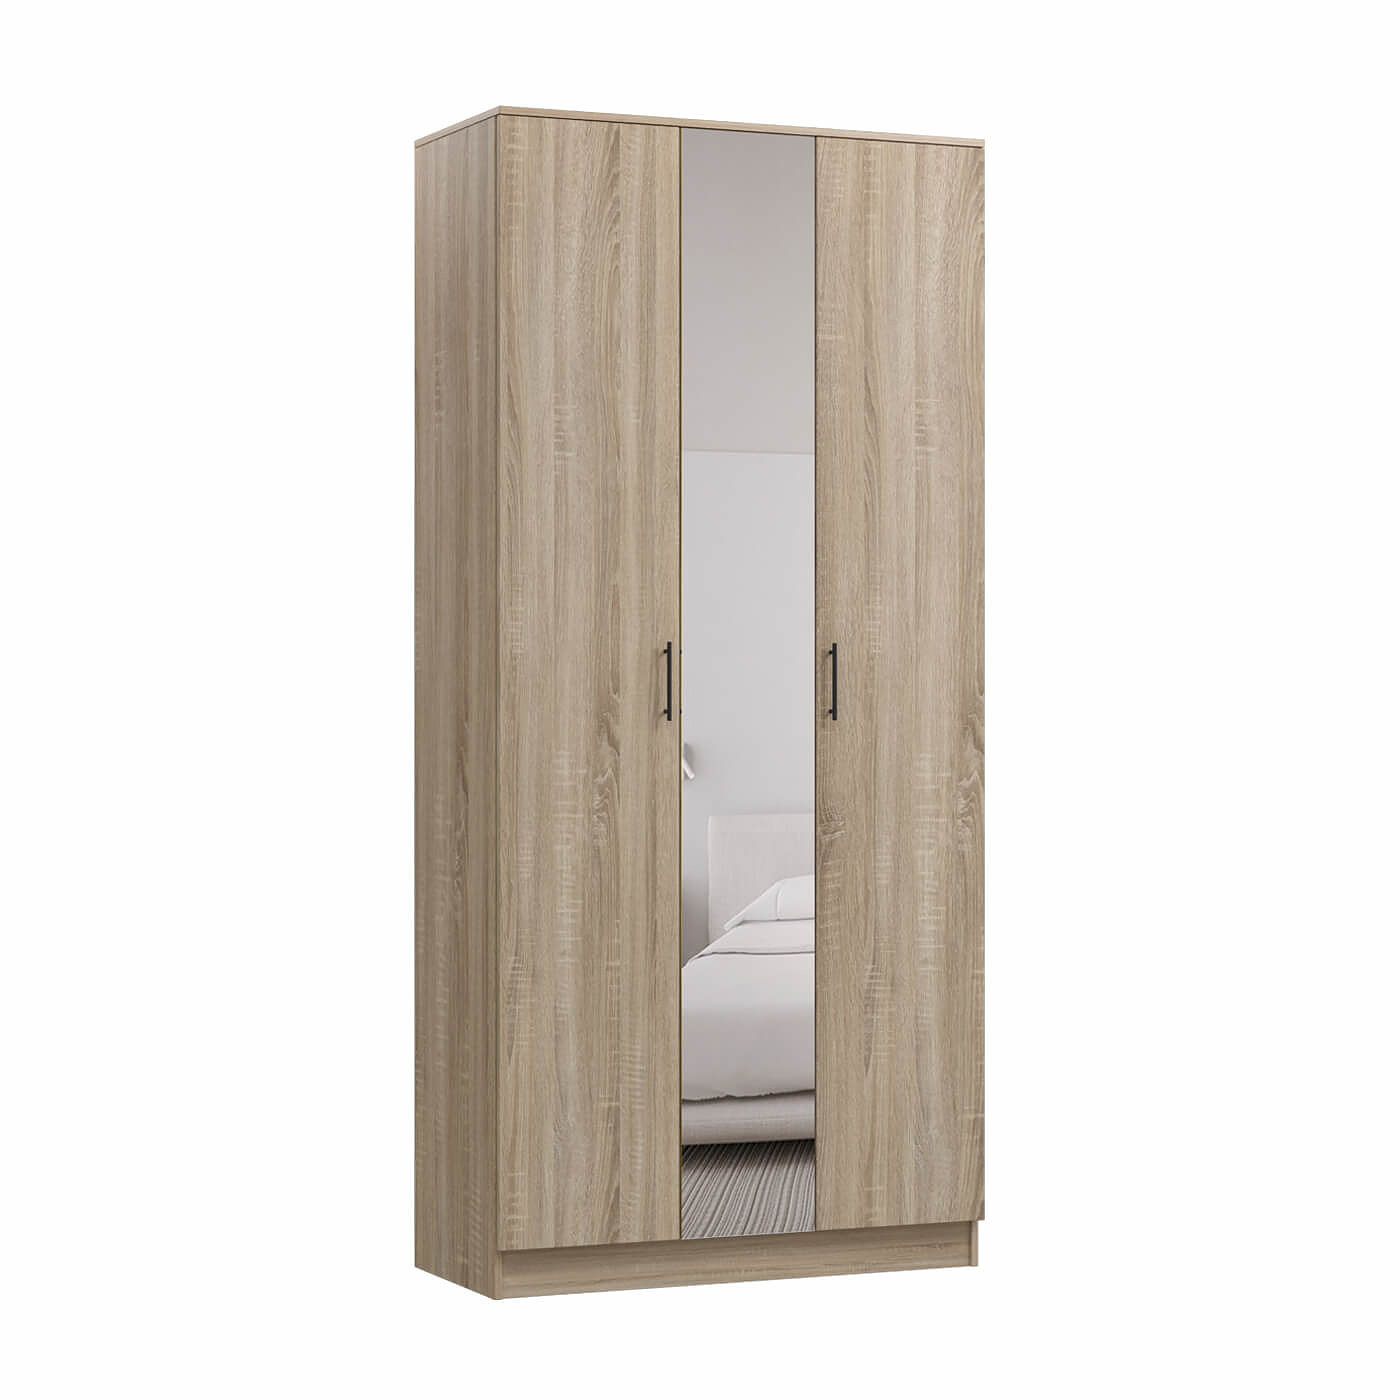 Шкаф Барри-200g современный для прихожей и спальни - фото 1 large